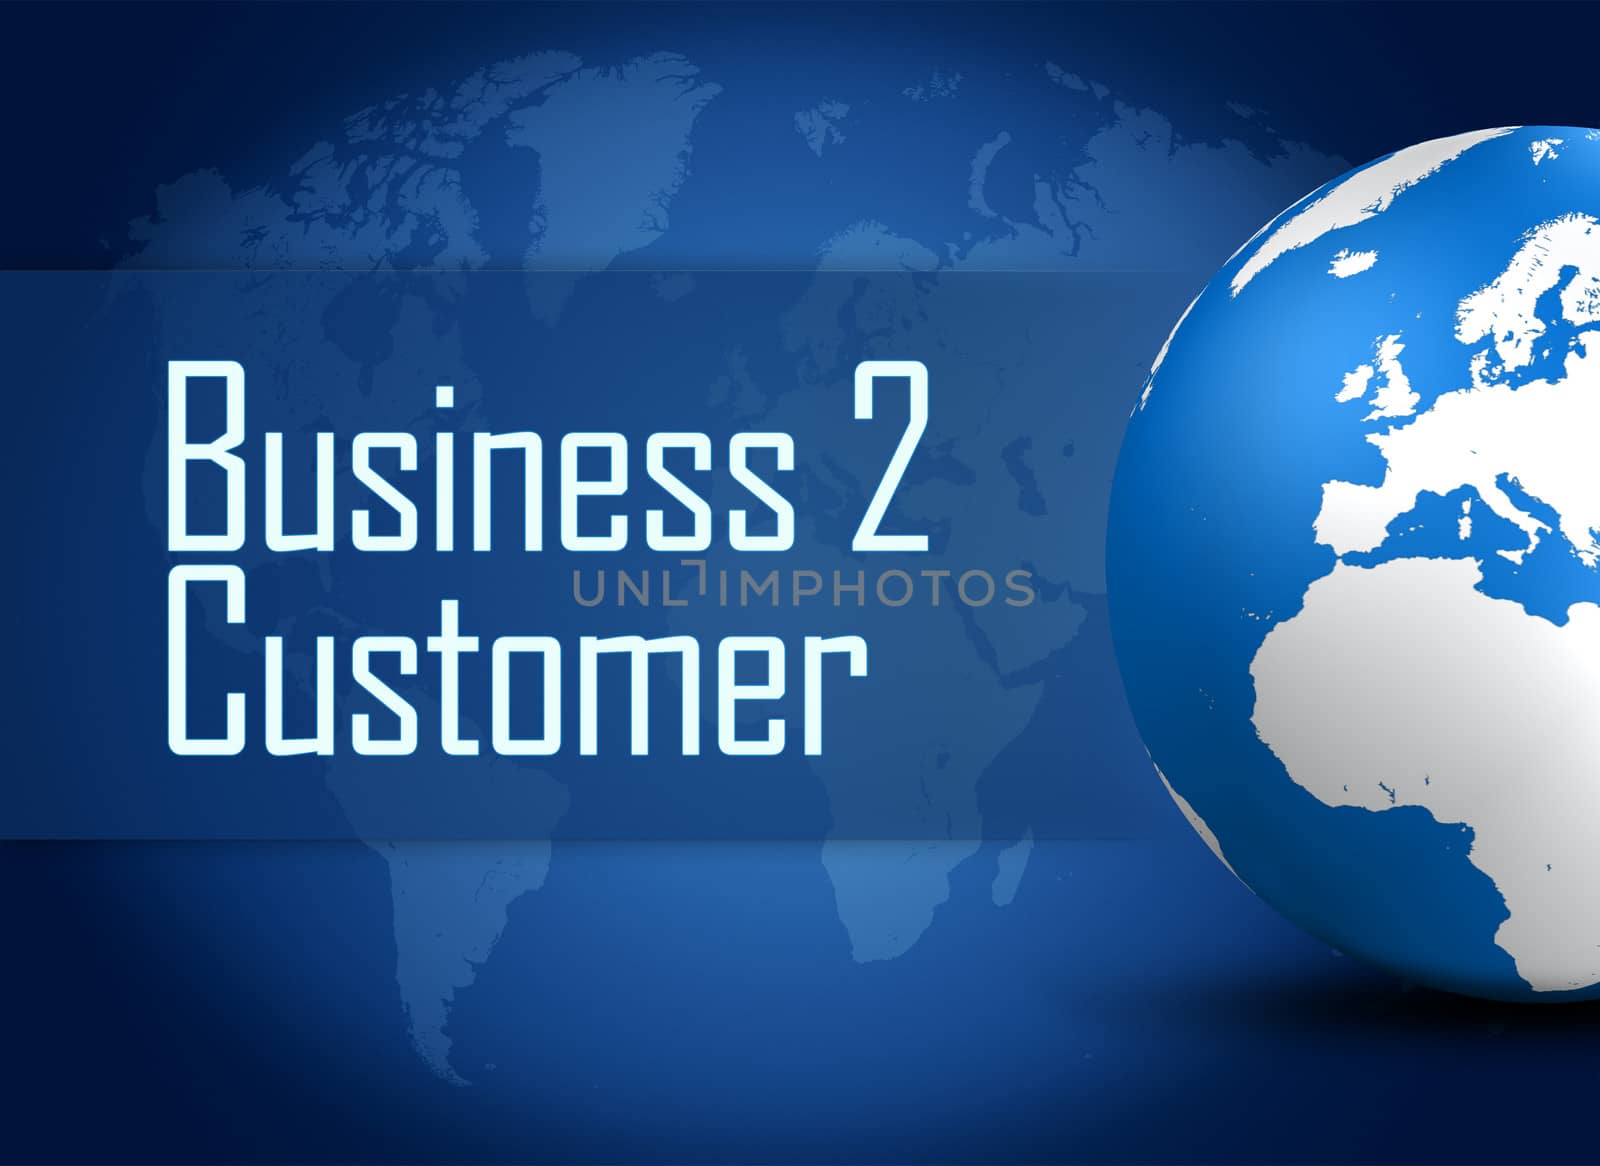 Business to Customer by Mazirama